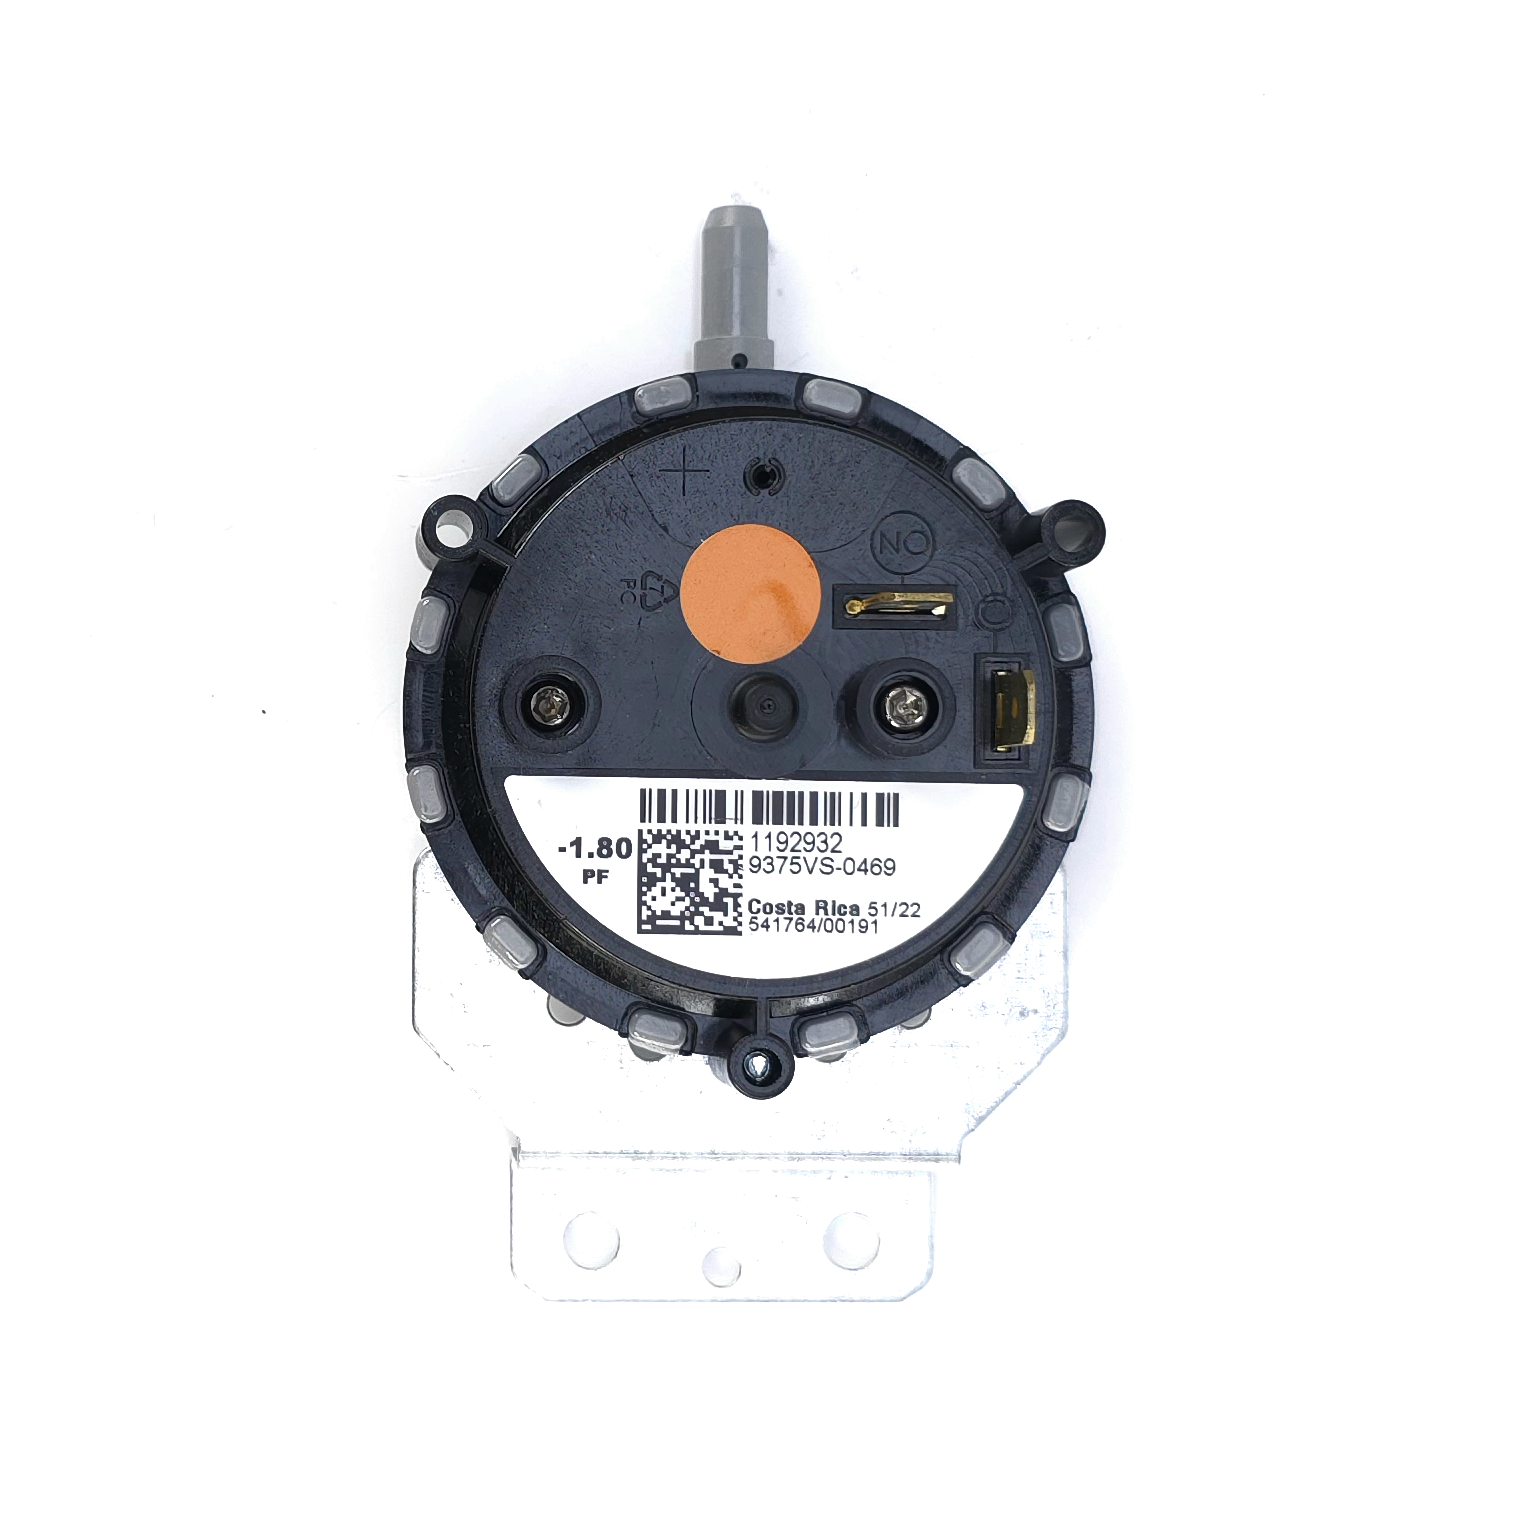 HEIL 1192932 Furnace Pressure Switch 1.80 WC